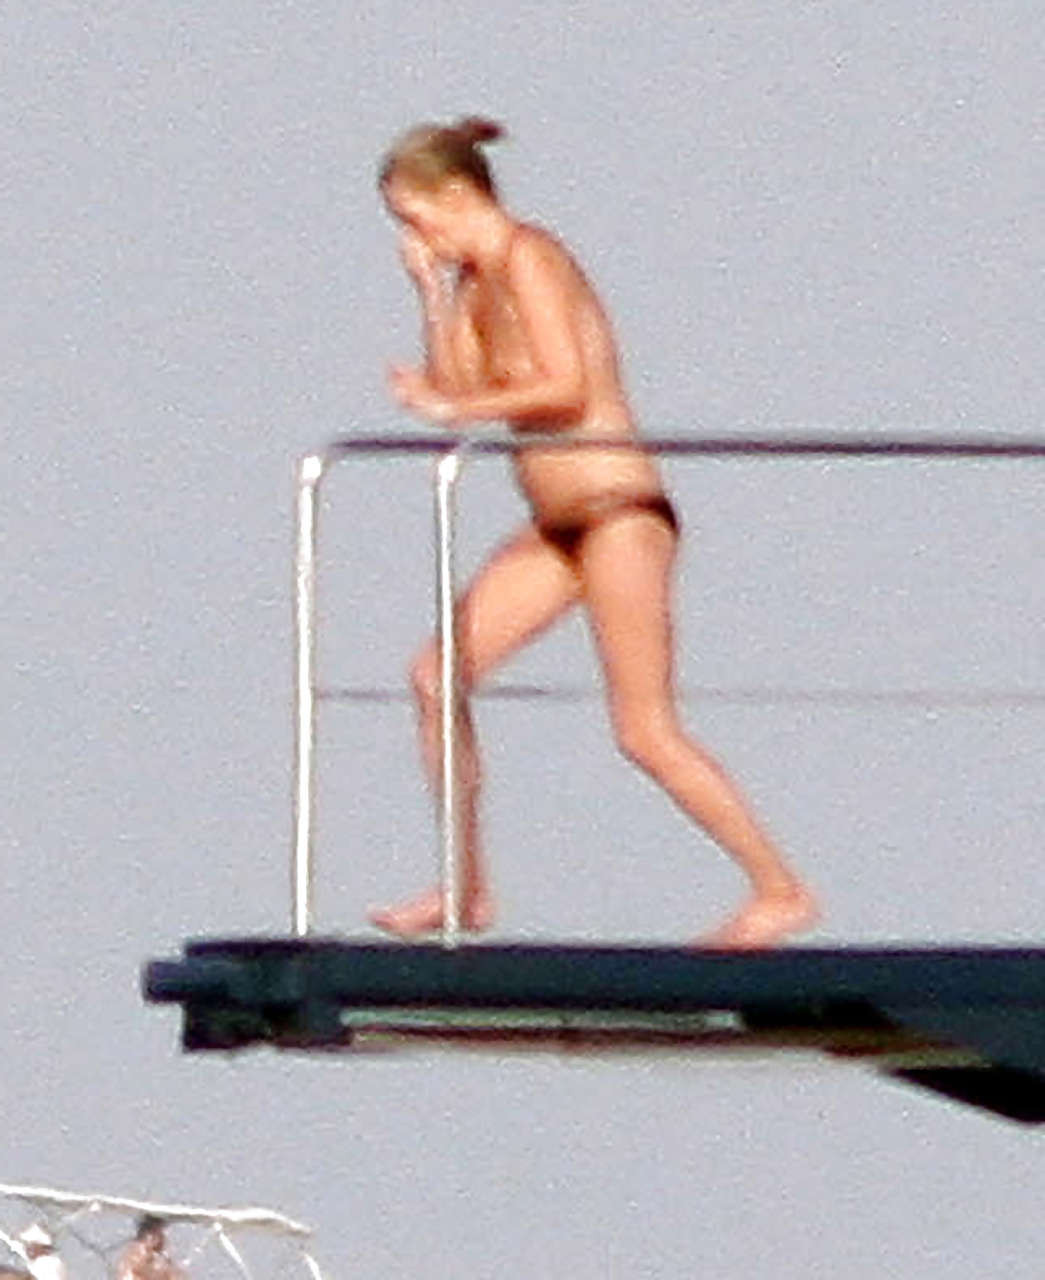 Kate Moss, seins nus, sautant d'un yacht et montrant sa culotte, photographiée par des paparazzis.
 #75290694